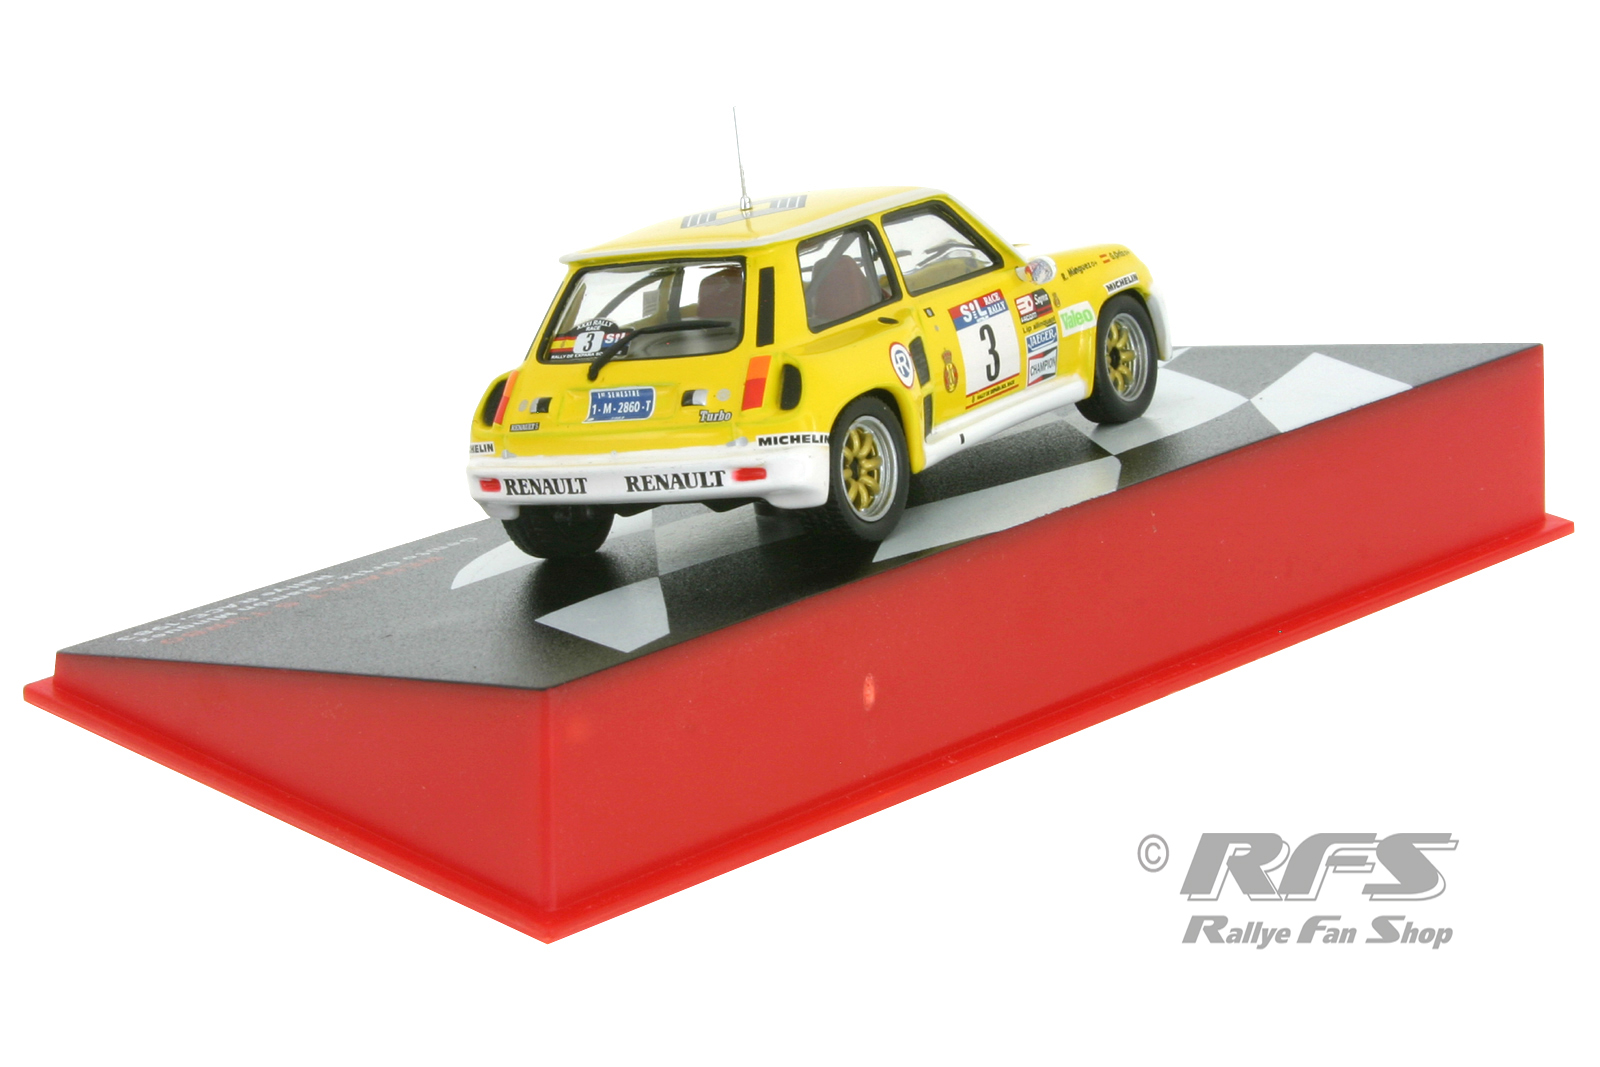 Renault 5 Turbo - Rallye Sol RACE 1983